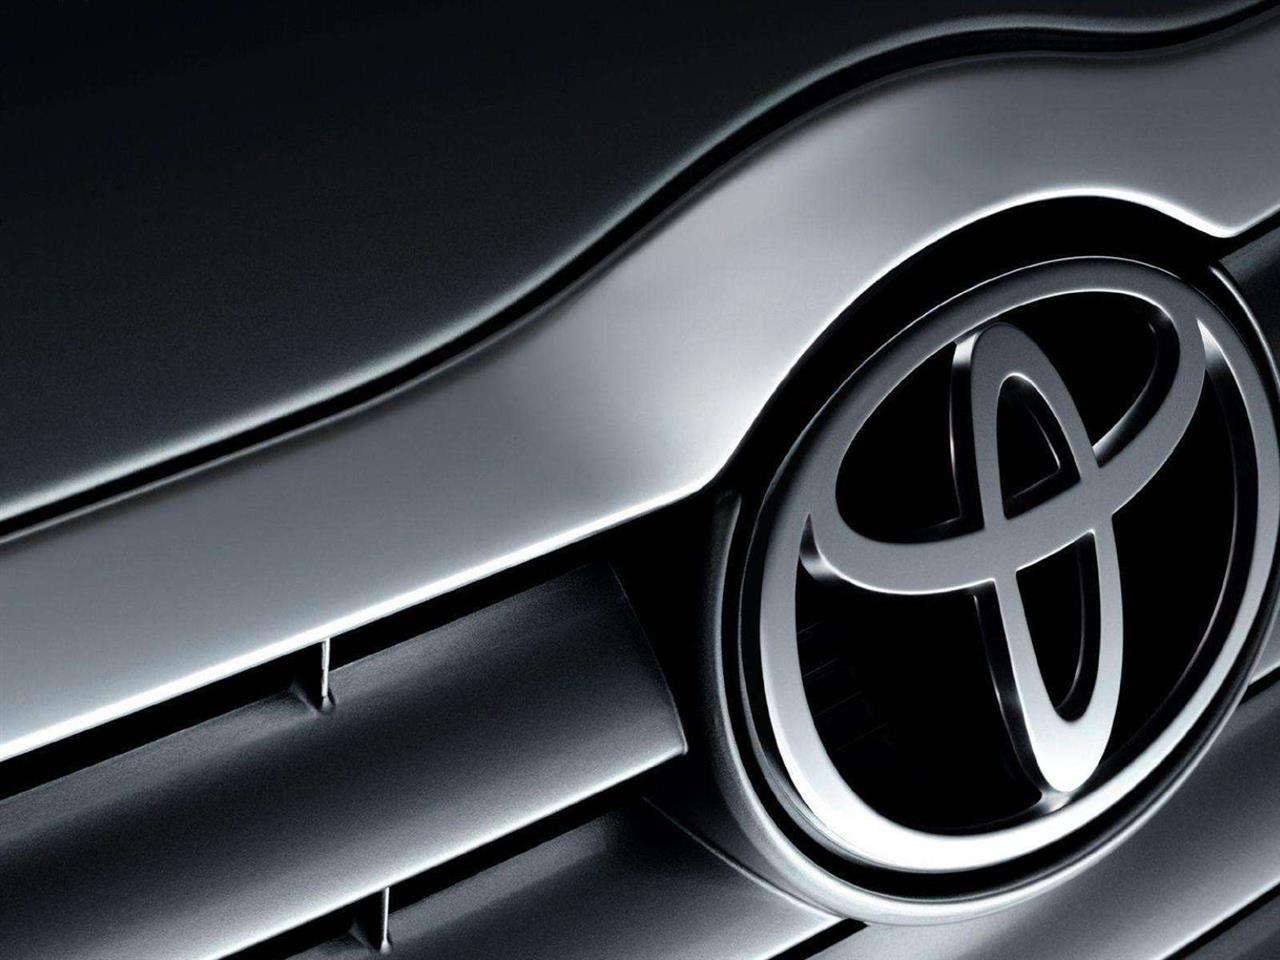 Toyota najbardziej wartościową marką motoryzacyjną według Interbrand już po raz 14.